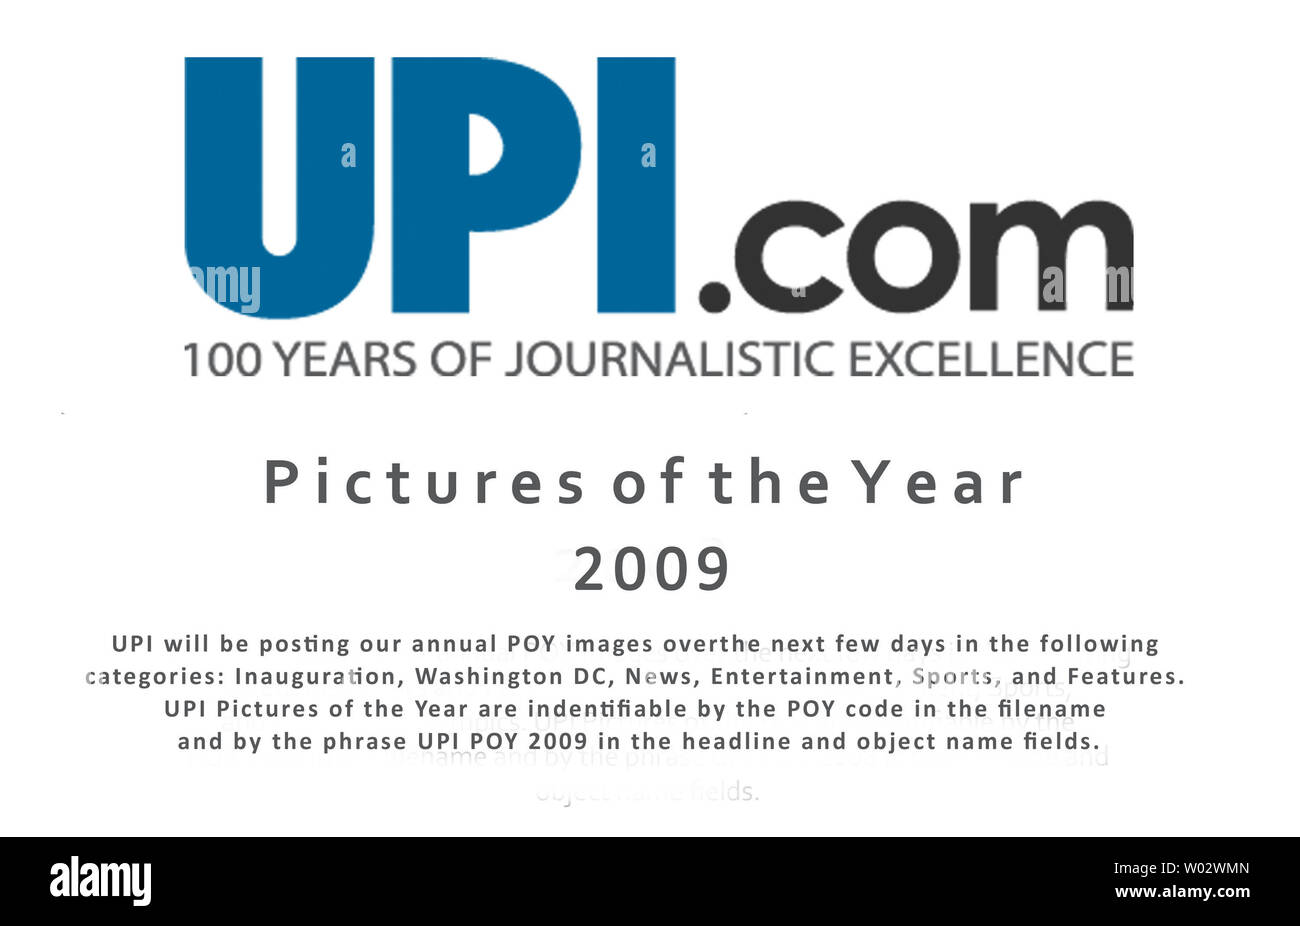 L'UPI sera poster nos images POY annuel au cours des prochains jours dans les catégories suivantes : Inauguration, Washington DC, Nouvelles, divertissement, des Sports et de l'UPI Caractéristiques Photos de l'année sont par l'indéfinissable POY code dans le fichier et par l'expression UPI POY 2009 dans le titre sur les champs Nom de l'objet. Banque D'Images